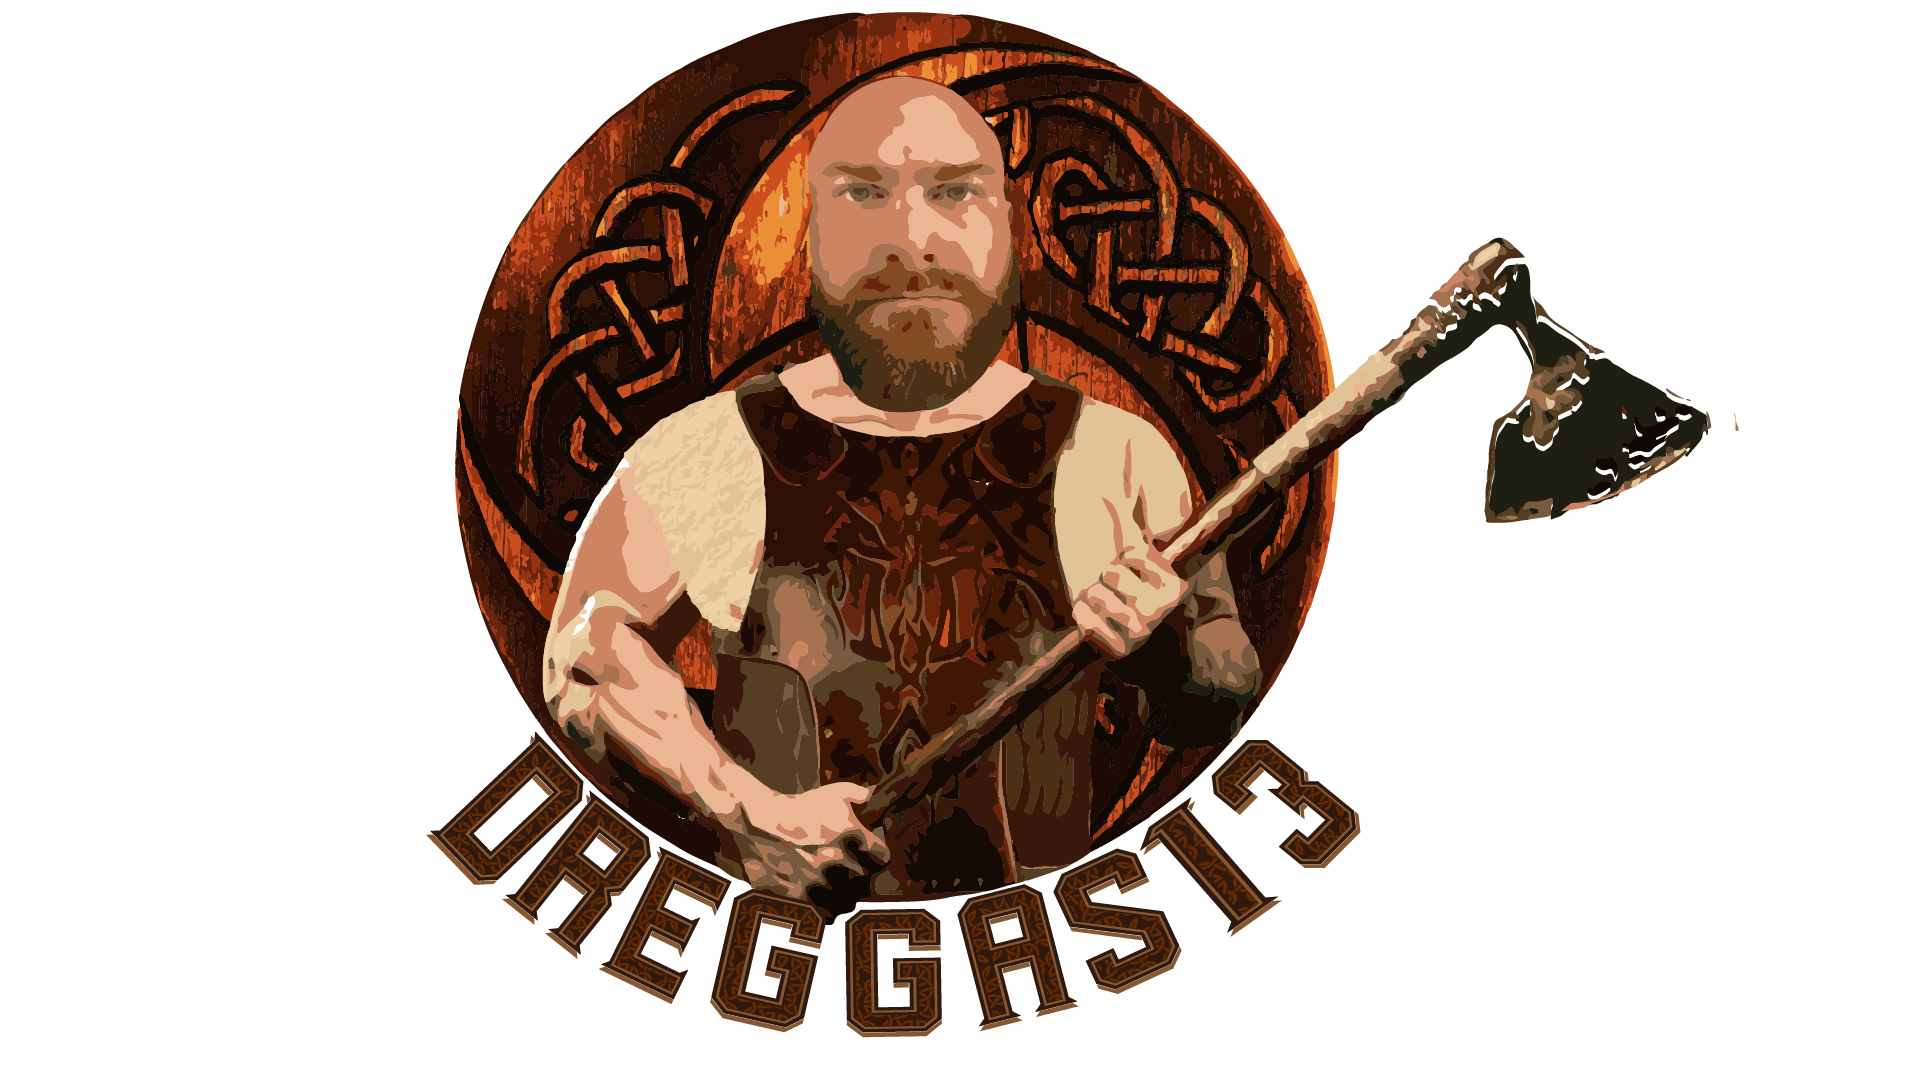 Dreggas13